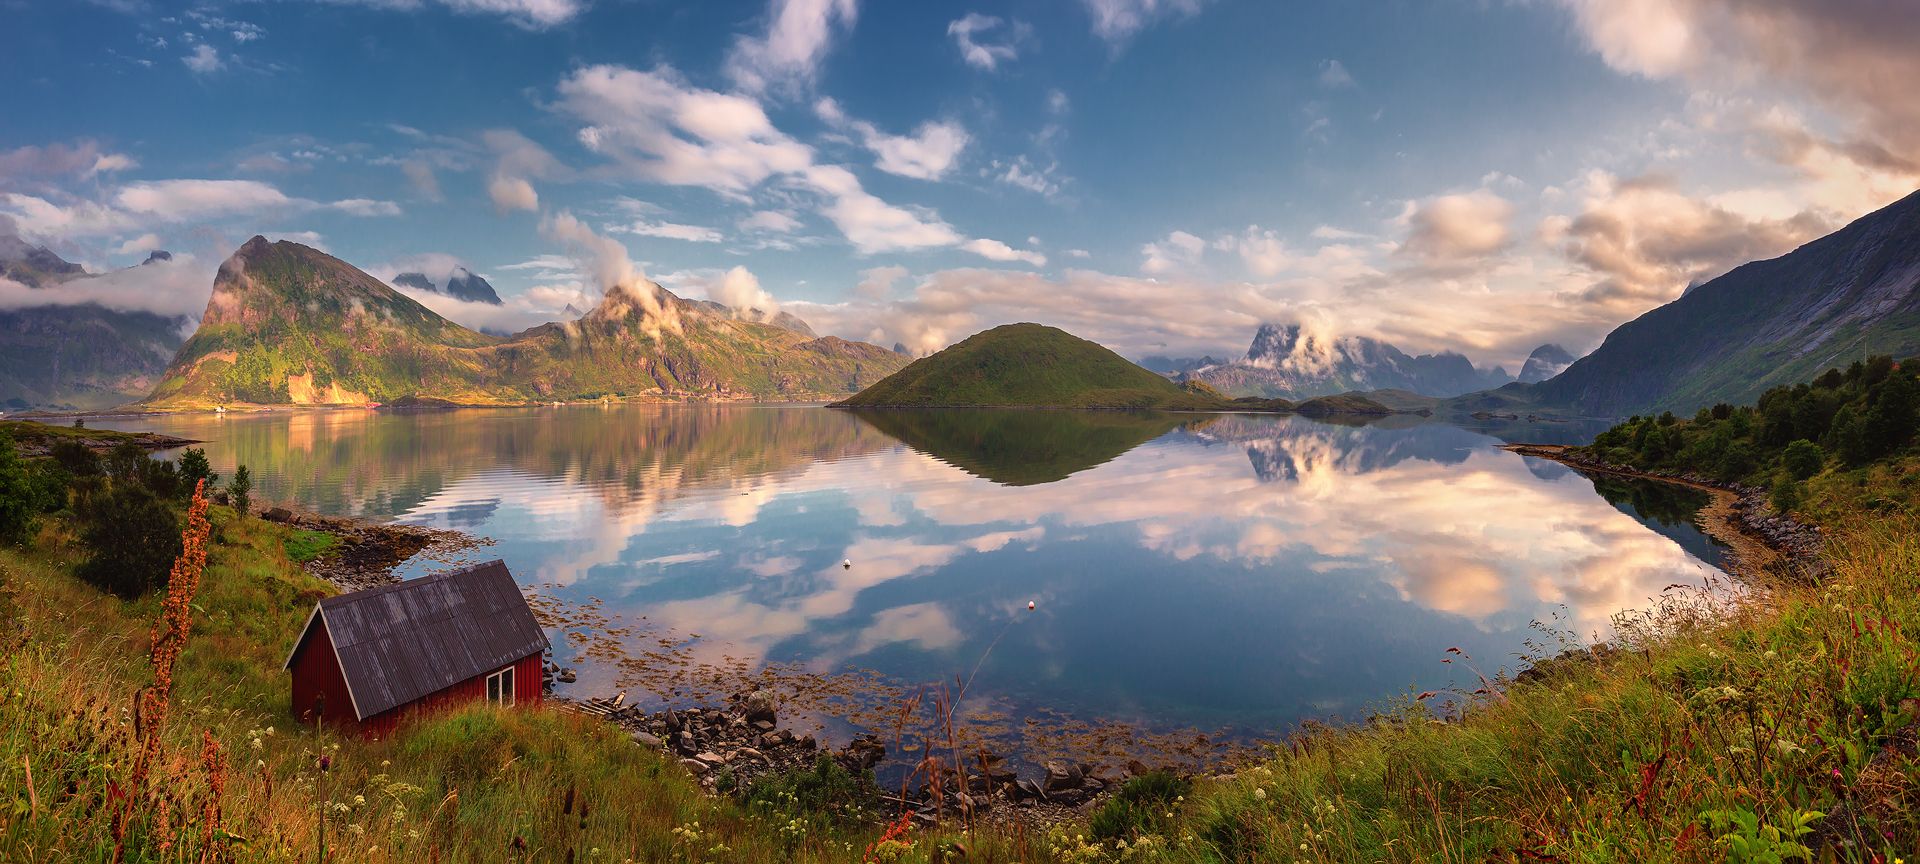 панорама, норвегия, лофотены, фьорд, лето, вечер, fredvang, остров, Евгений Матюшенков